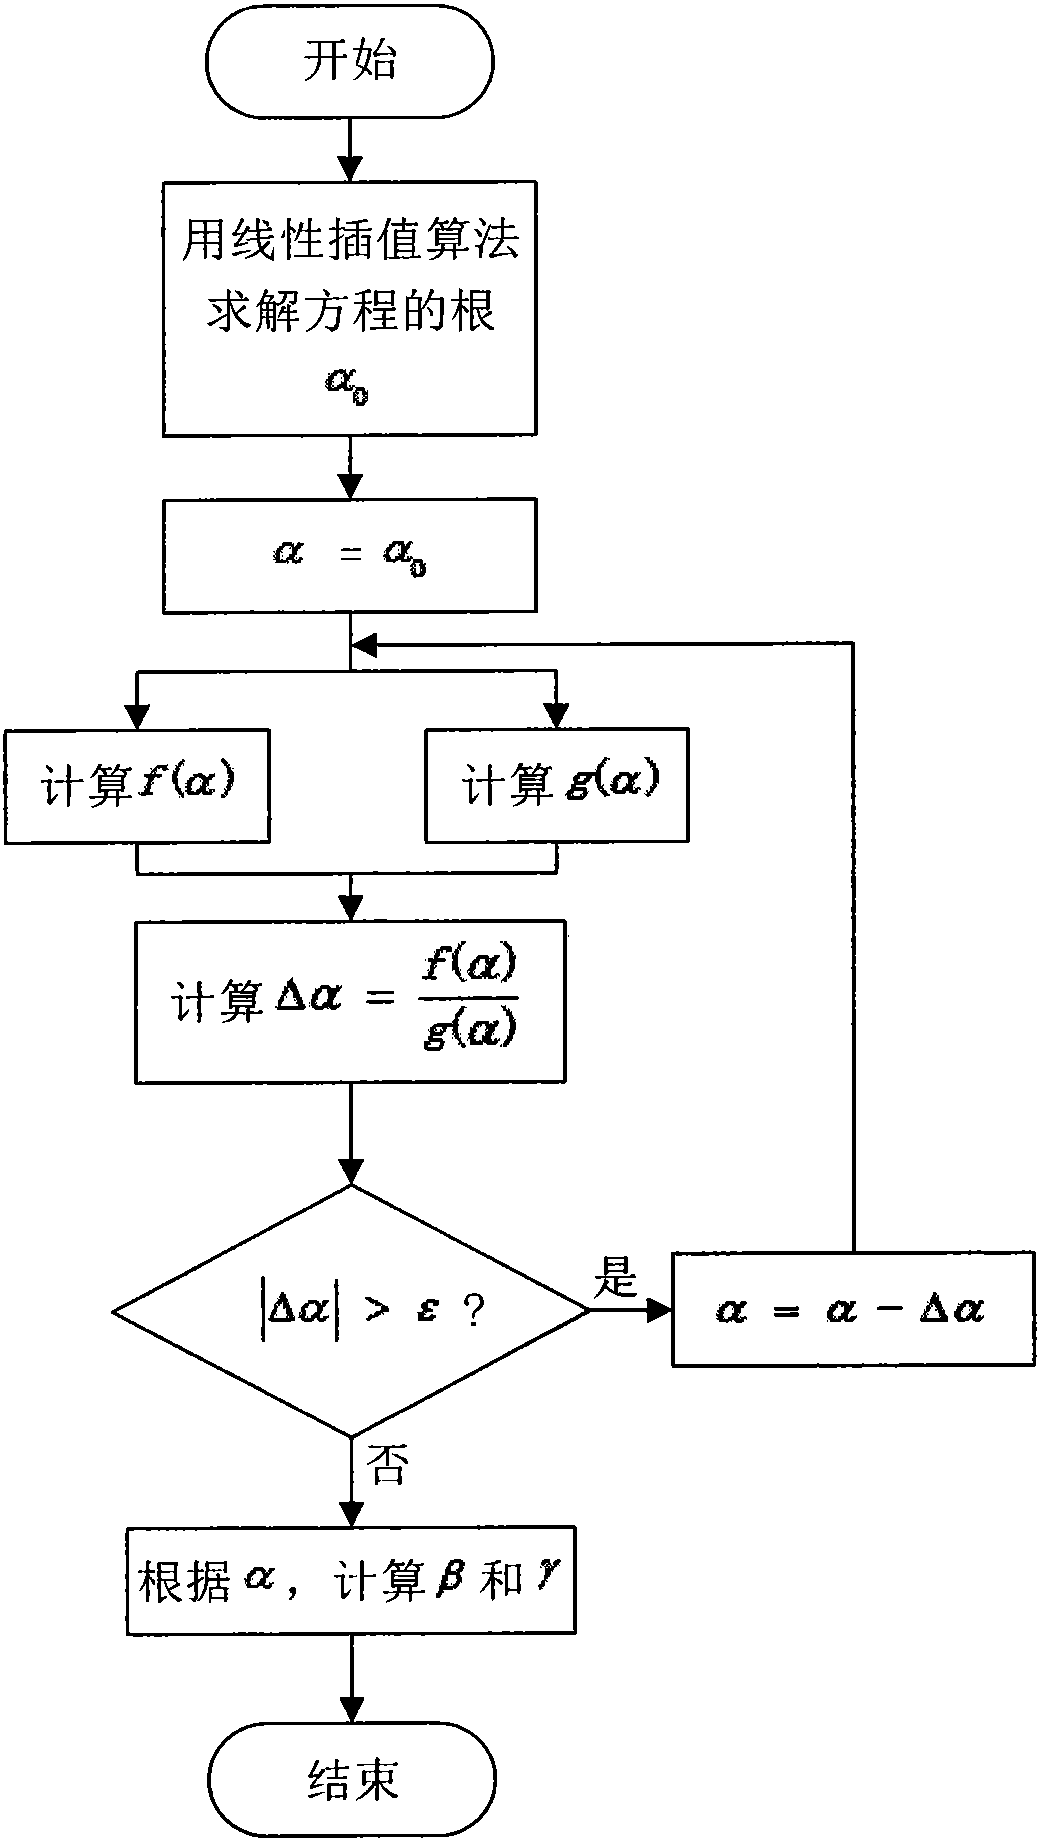 Coal rock classification method based on asymmetric generalized Gaussian model in wavelet domain